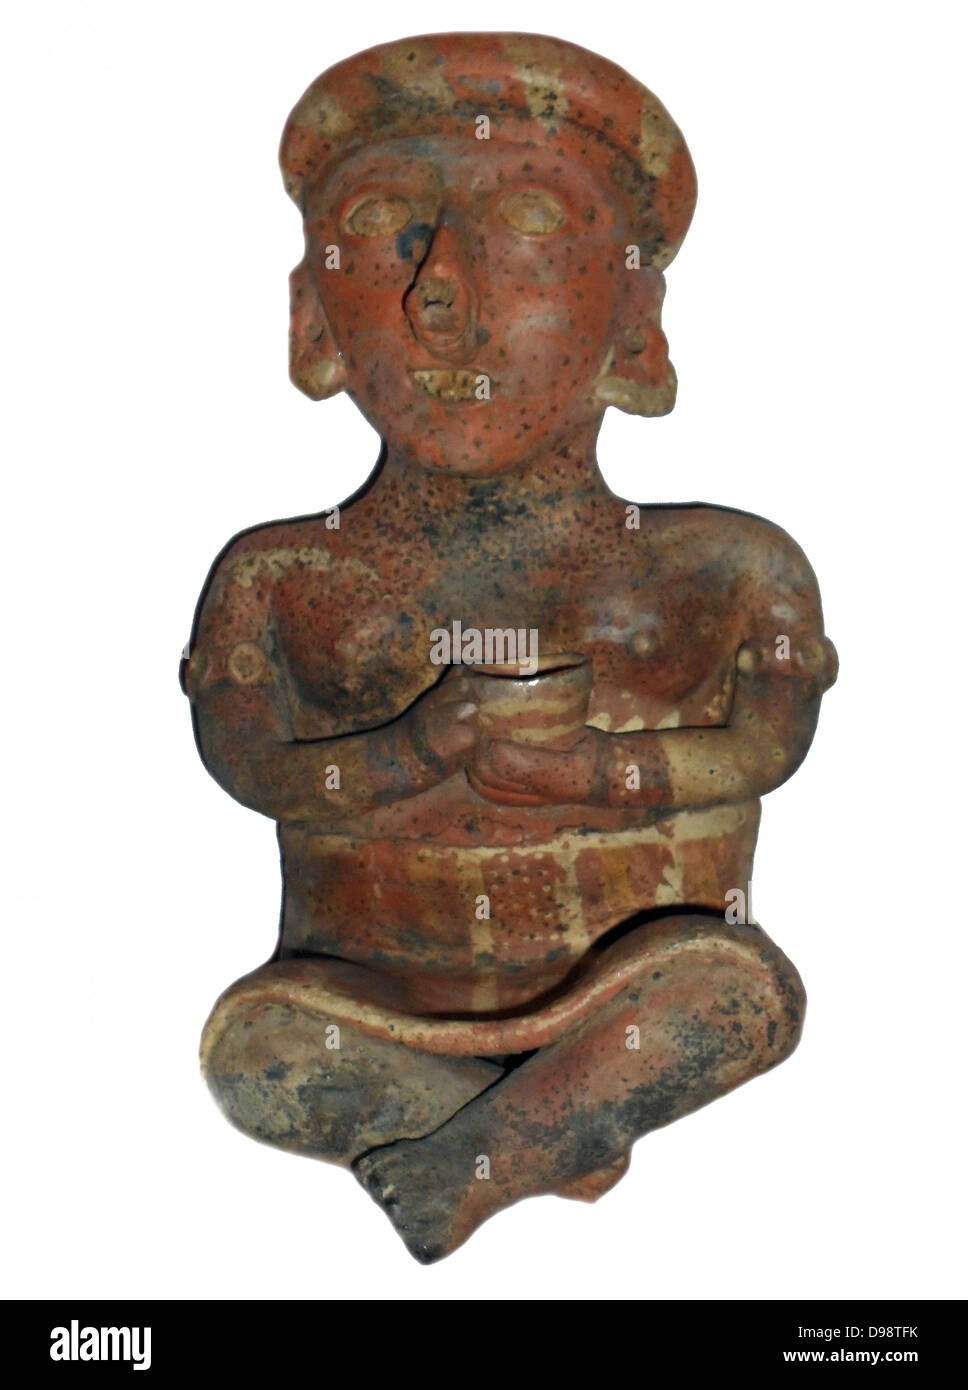 Figurilla de arcilla utilizado como una tumba de regalo. Enterrados con los muertos, de acuerdo con el estado para acompañar el último viaje. La arcilla, la cultura de Nayarit, México, 100 a 900 D.C. Foto de stock